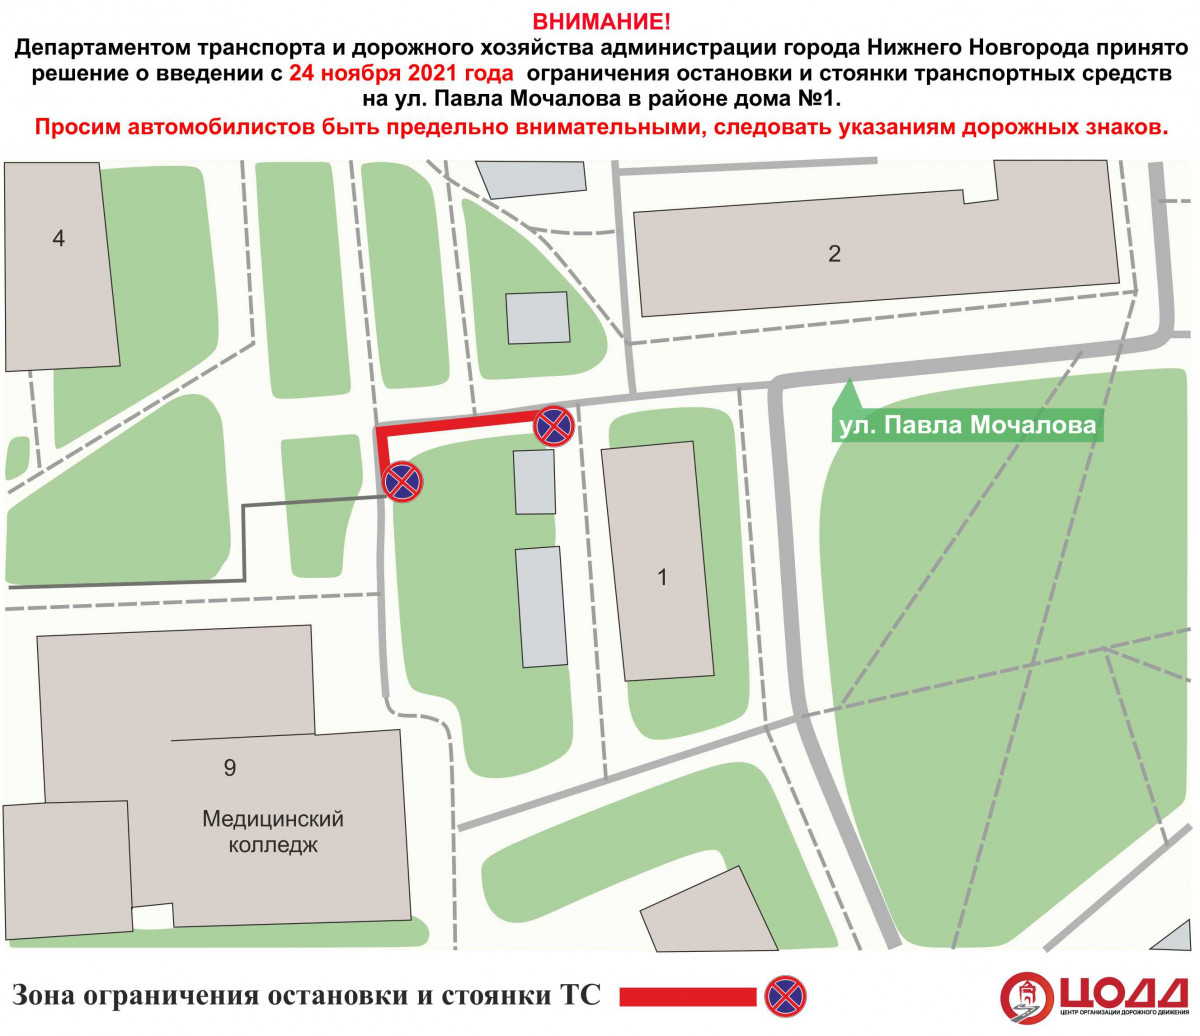 Парковку ограничат на подъезде к медицинскому колледжу в Нижнем Новгороде с 24 ноября